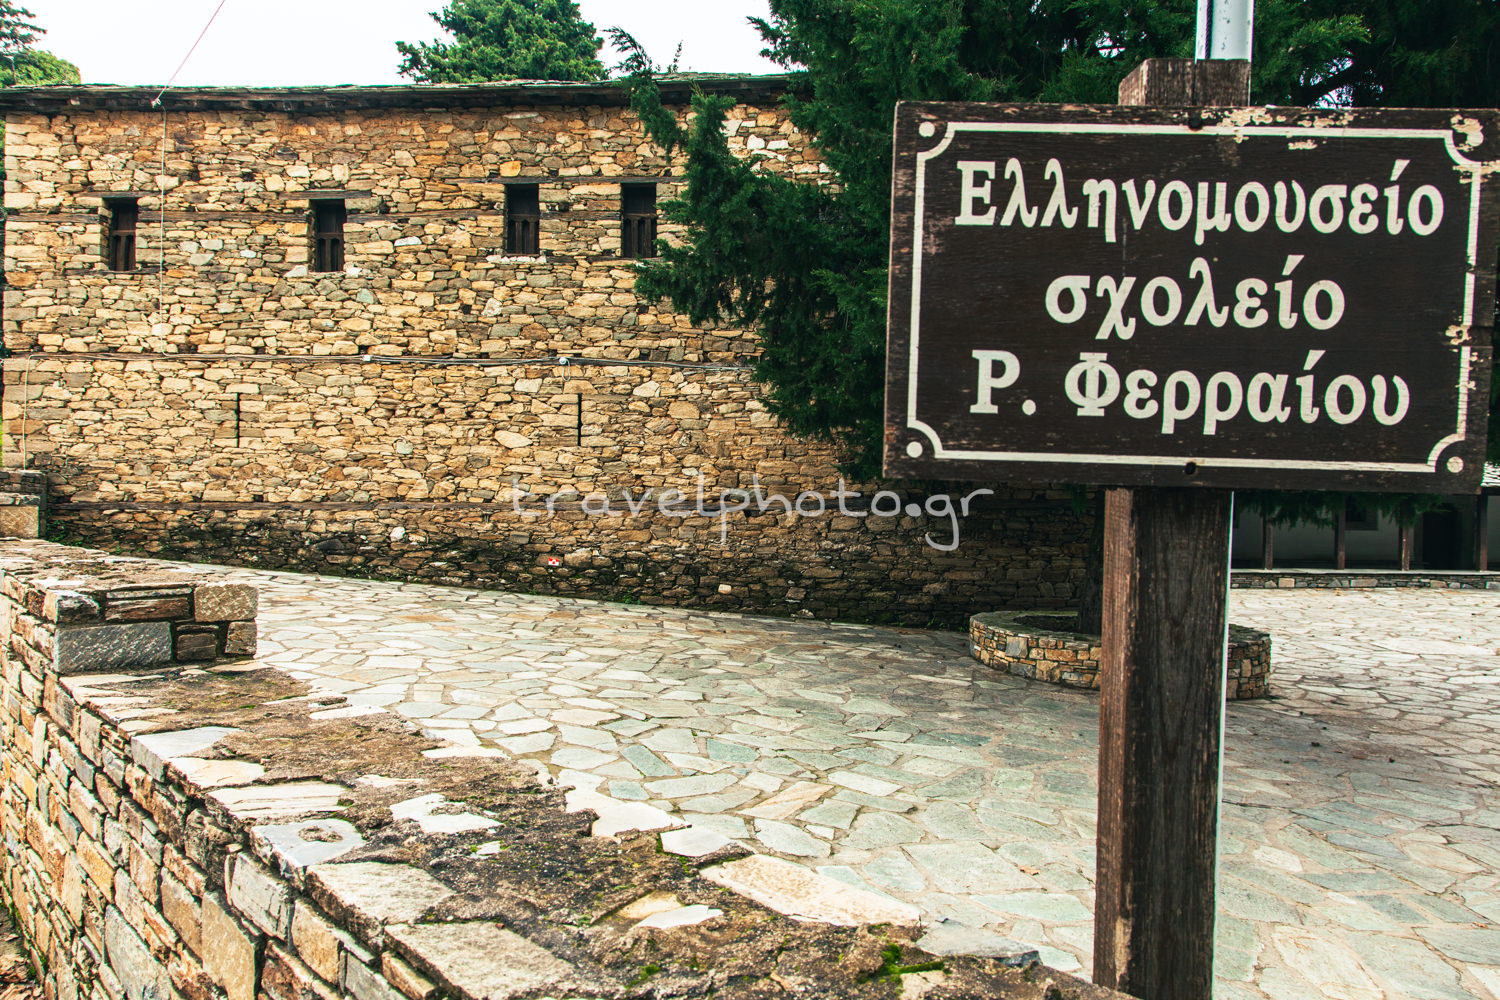 Ελληνομουσείο σχολείο Ρήγα Φερραίου Ζαγορά Πηλιο